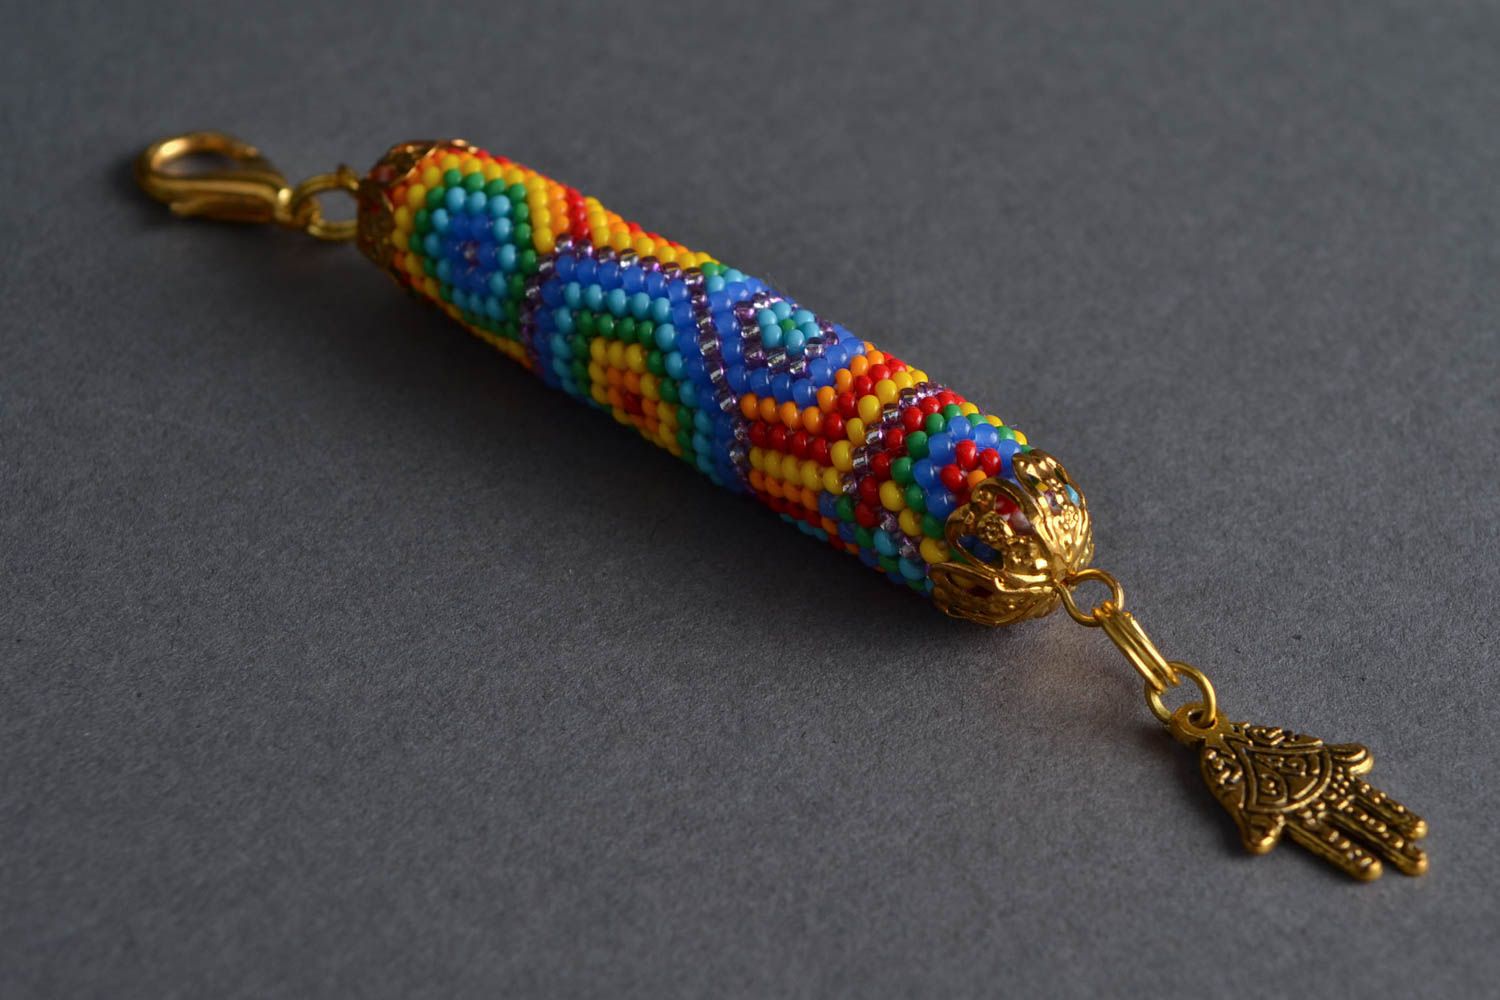 Оригинальный брелок для ключей или подвеска на сумку из бисера плетеный крючком  фото 1